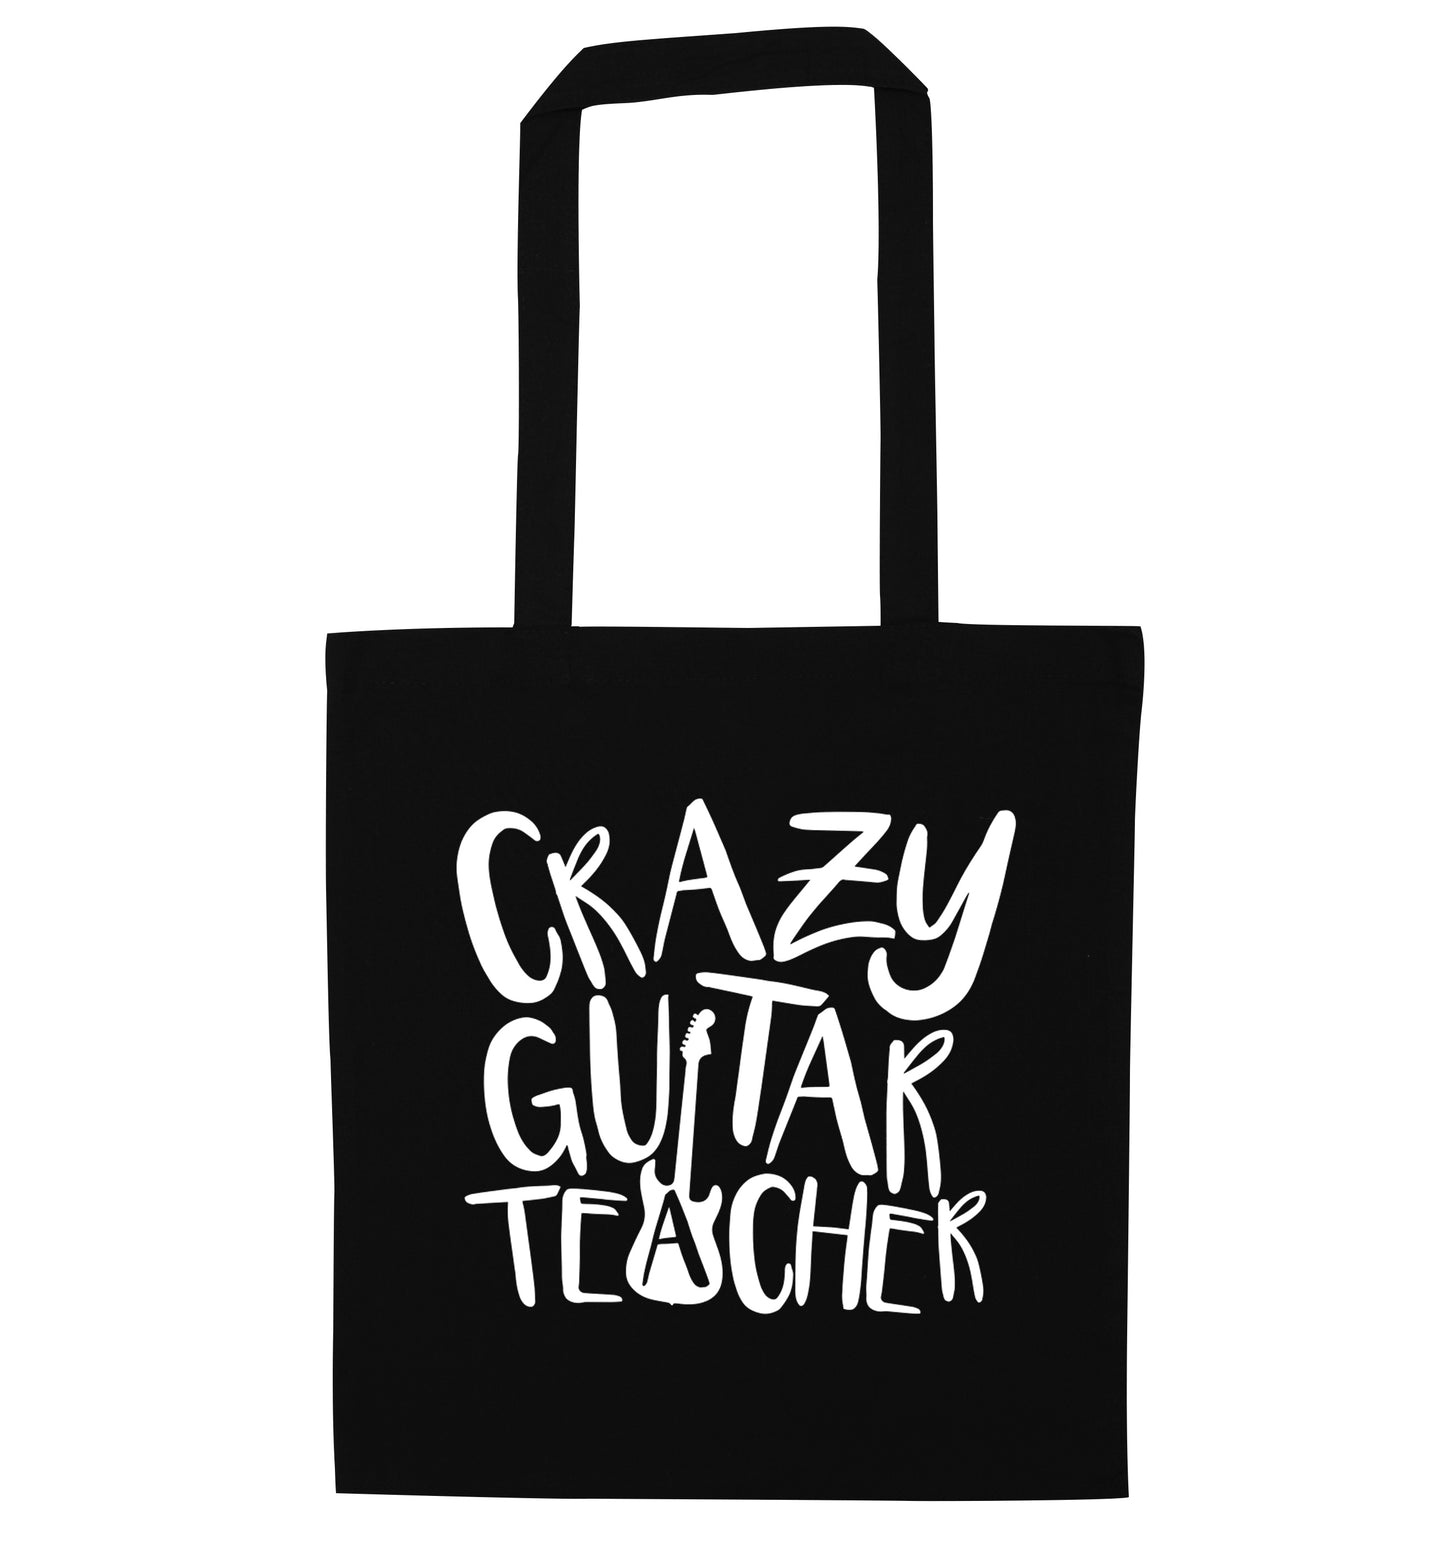 Crazy guitar teacher black tote bag